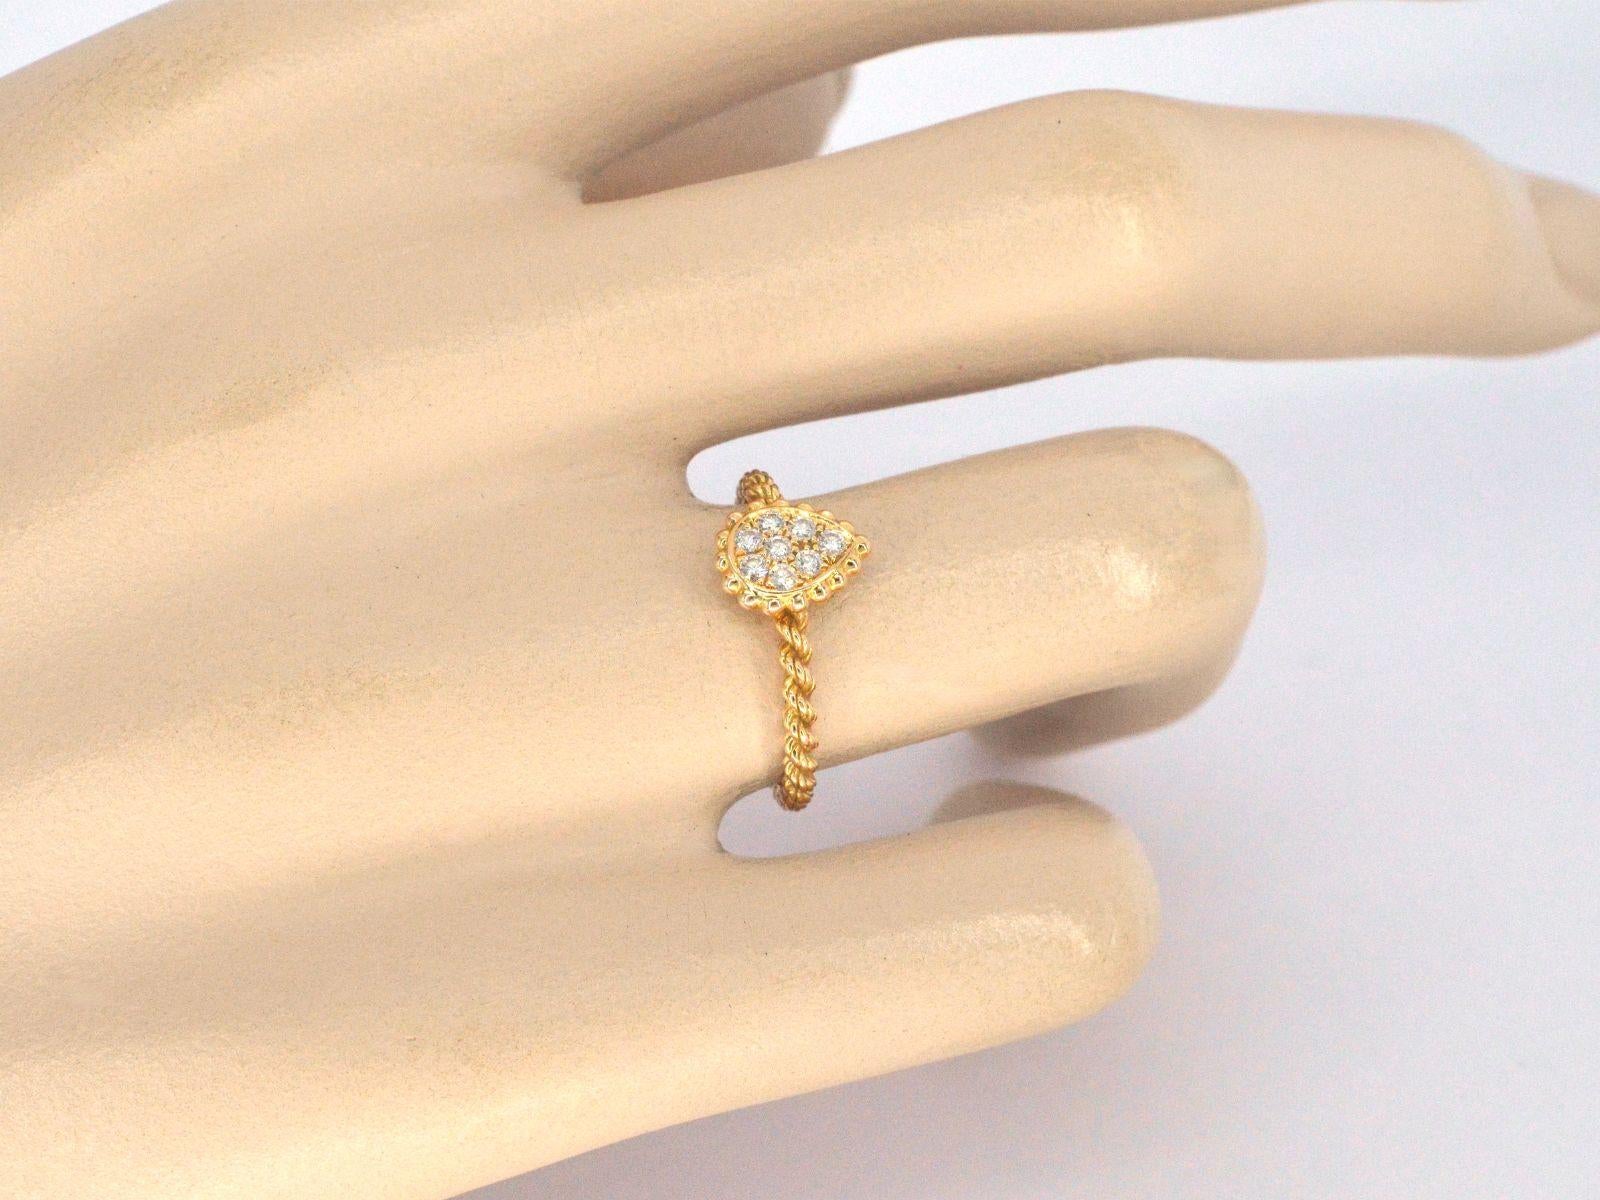 Der exquisite Boucheron Serpent Bohème XS Motif Ring ist ein wahres Zeugnis von Luxus und Eleganz. Dieser Ring ist mit natürlichen Diamanten von insgesamt 0,63 Karat besetzt, von denen jeder eine brillante Farbe (F-G) und Reinheit (VS) aufweist. Er